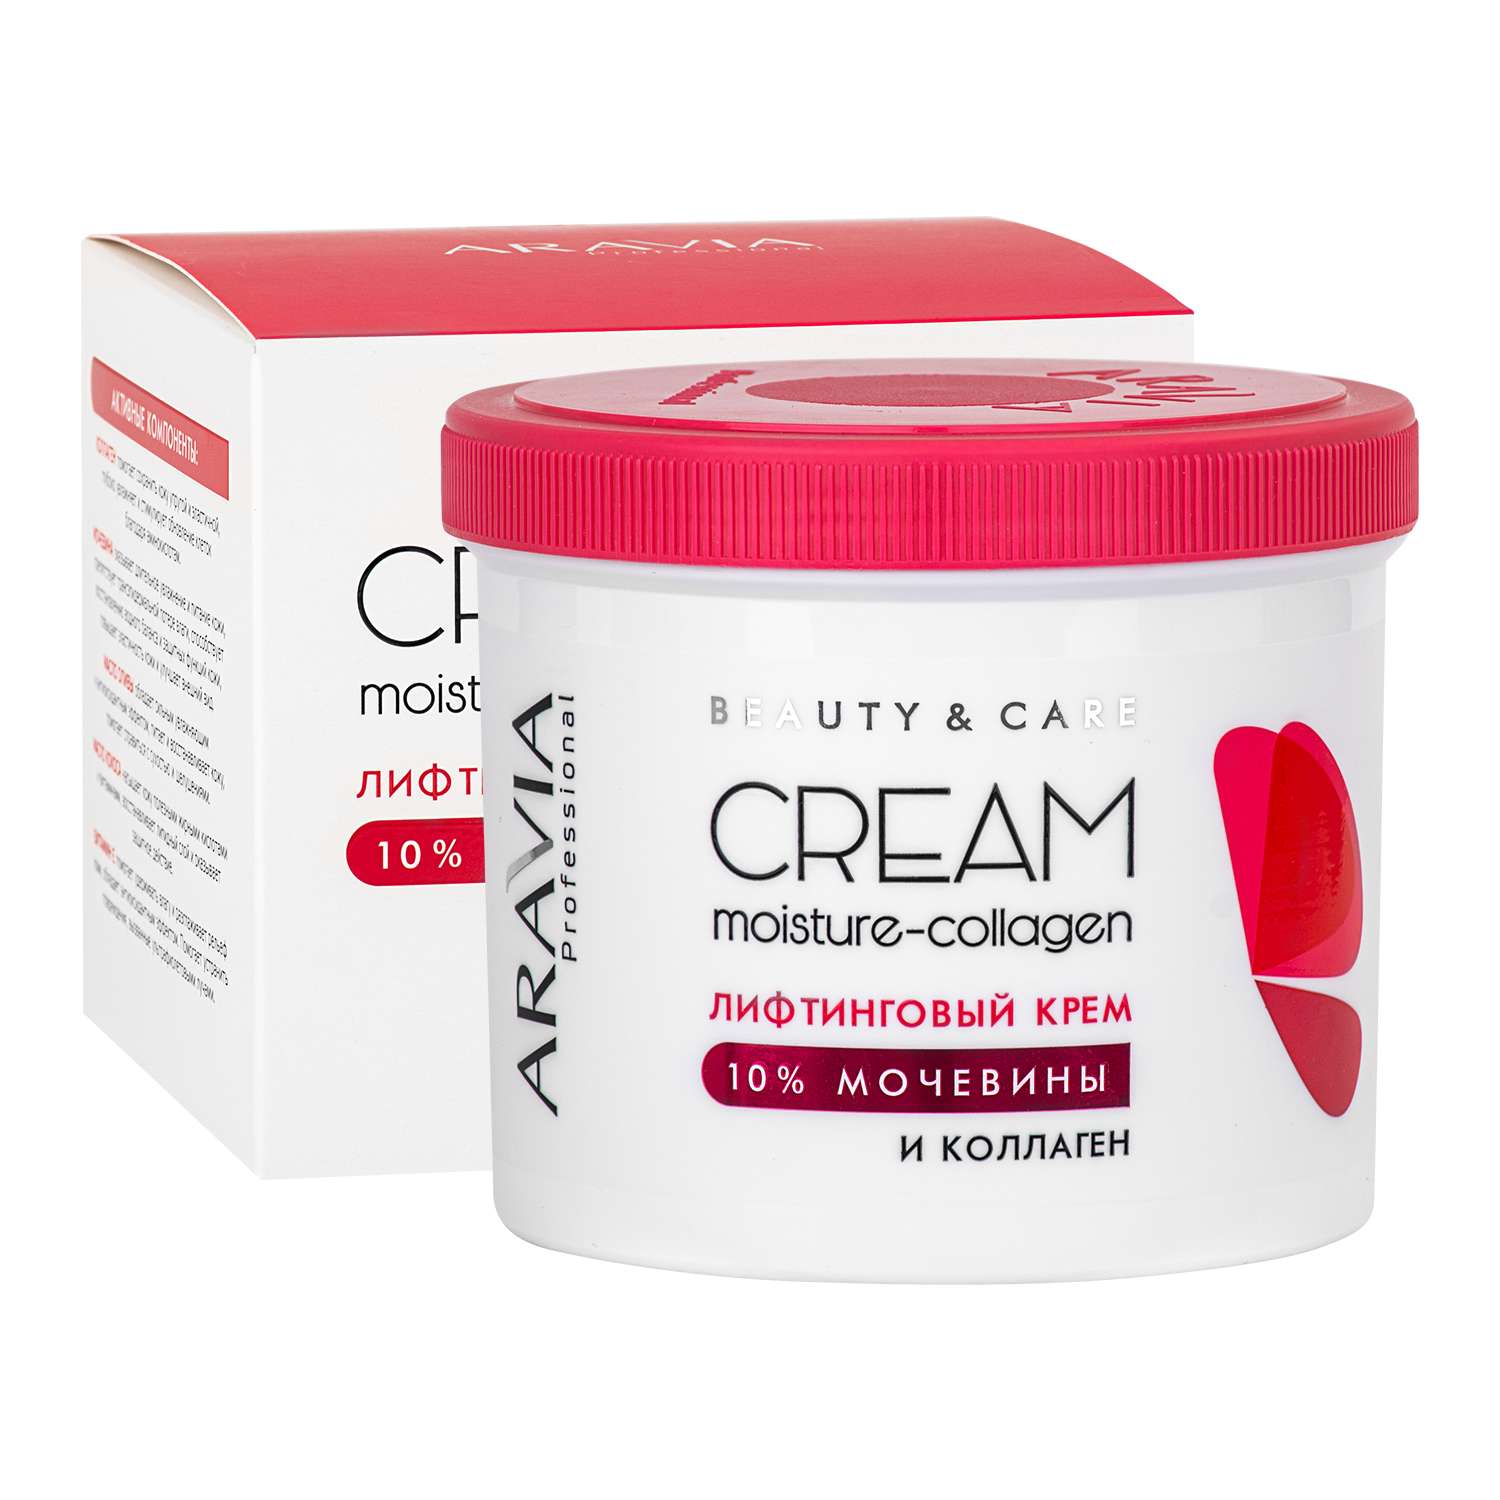 Крем для лица ARAVIA Professional лифтинговый с коллагеном и мочевиной 10% Moisture-Collagen Cream - фото 2